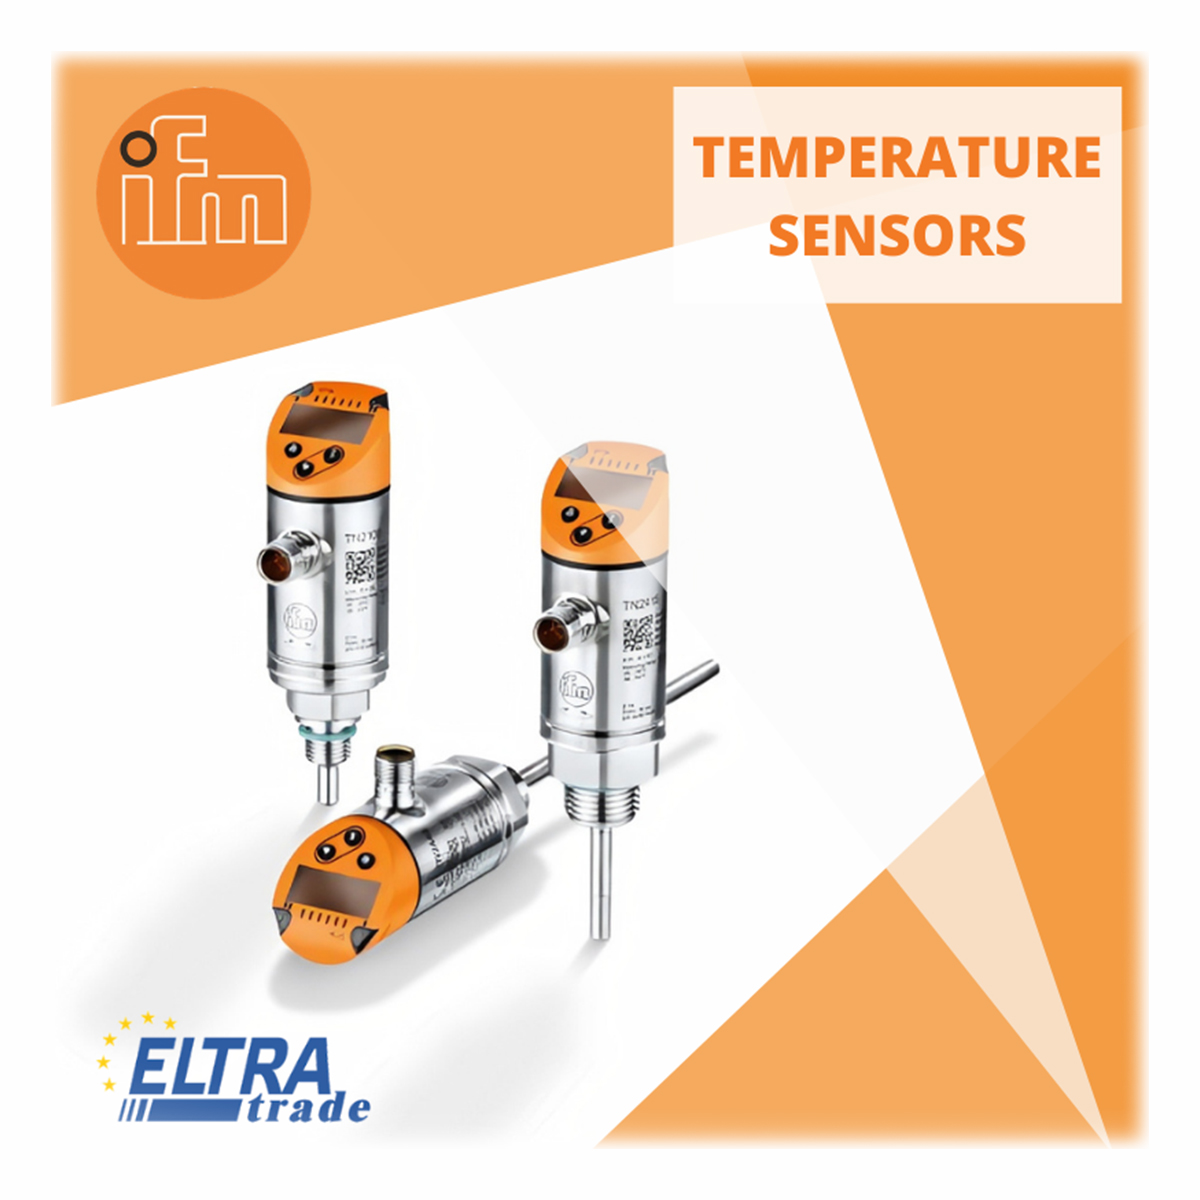 ifm temperature sensors photo